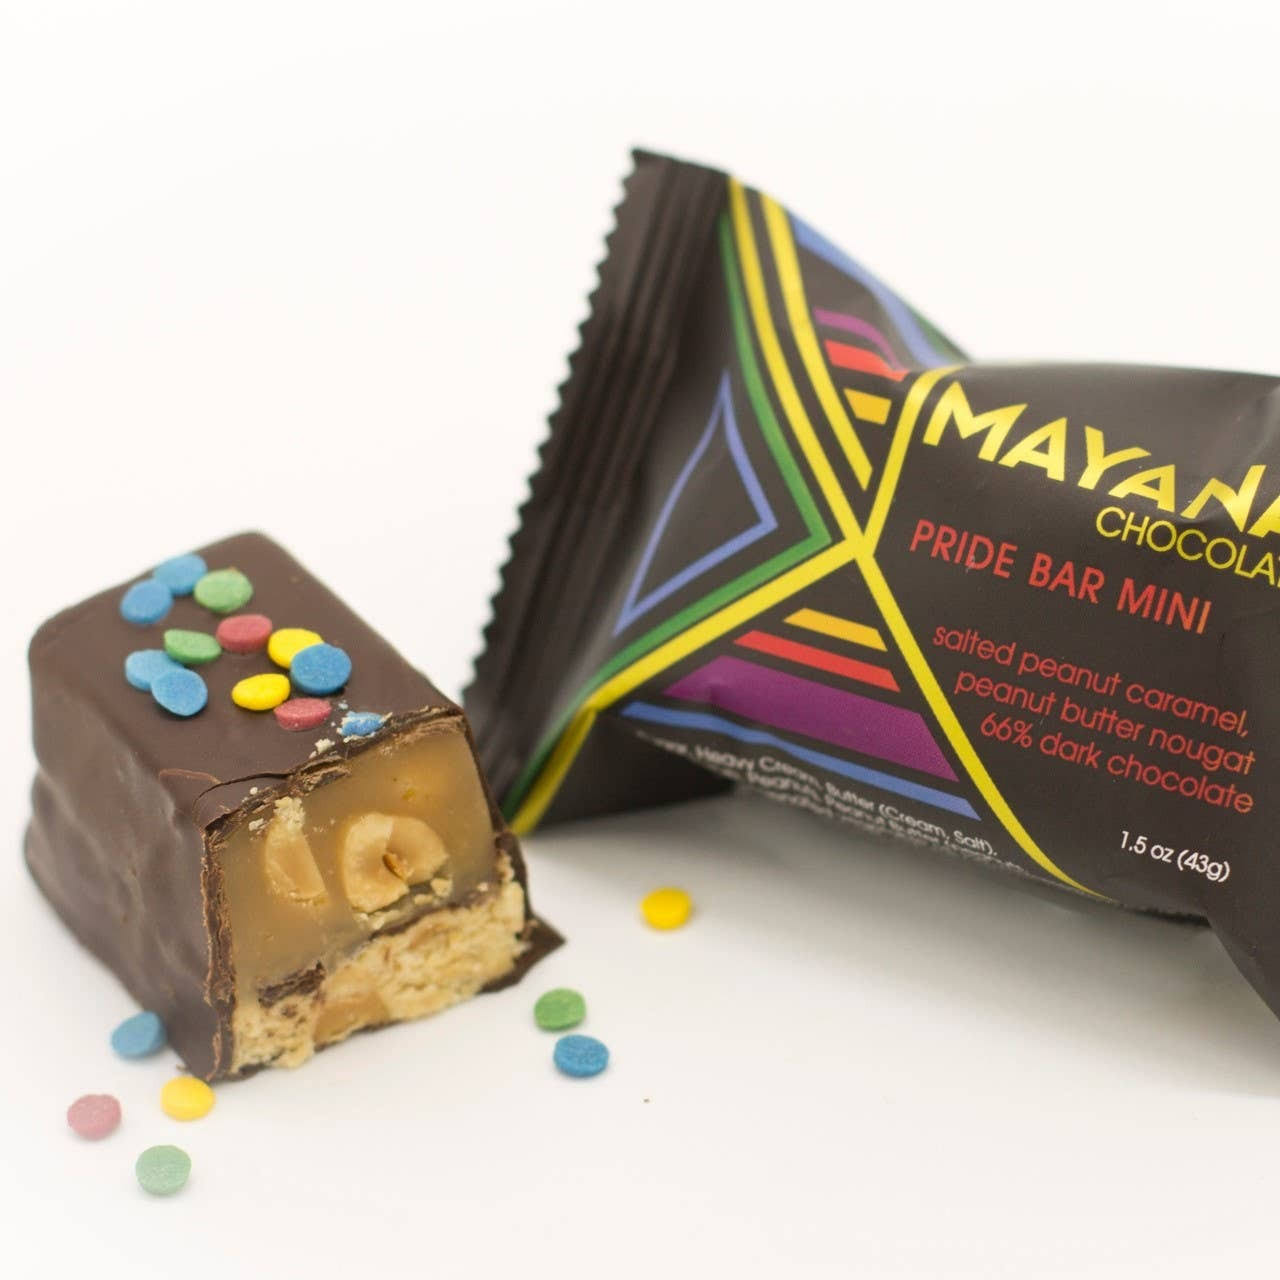 Pride Bar Mini by Mayana Chocolate